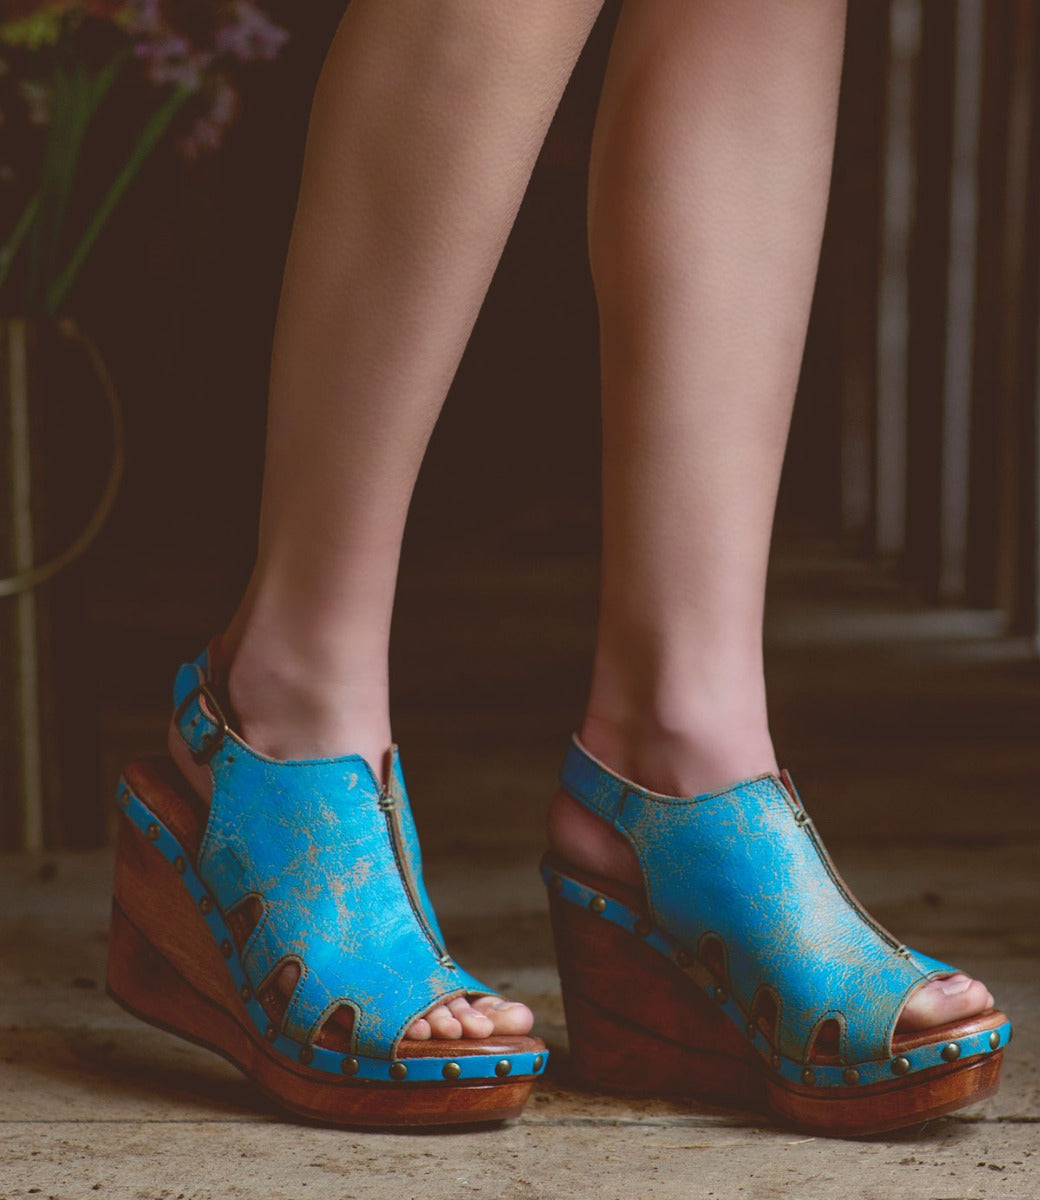 A woman's feet in blue Bed Stu Naiya wedge sandals.